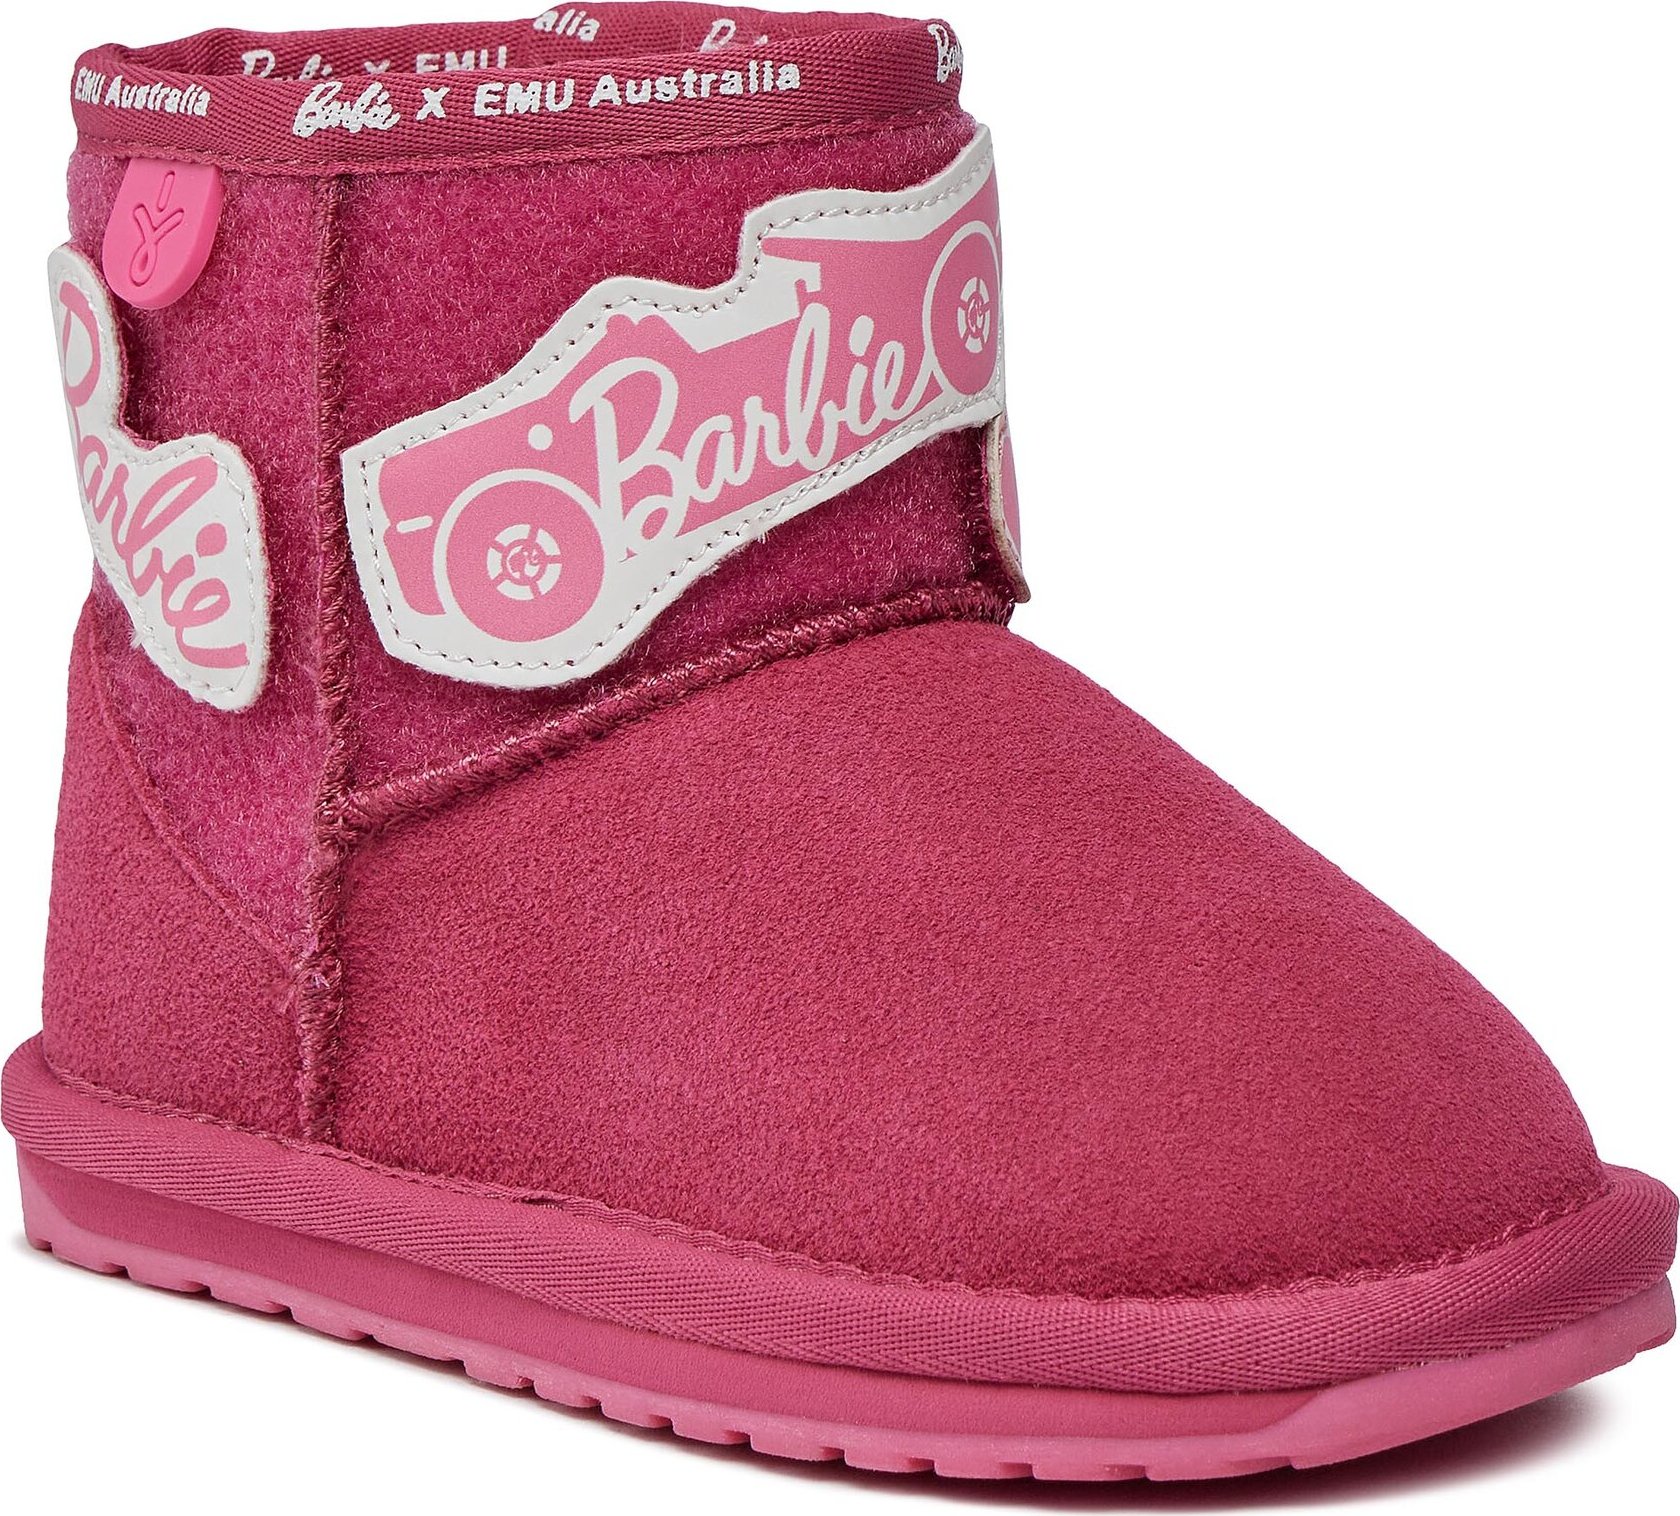 Kozačky EMU Australia Wallaby Mini Play K12748 Barbie Pink